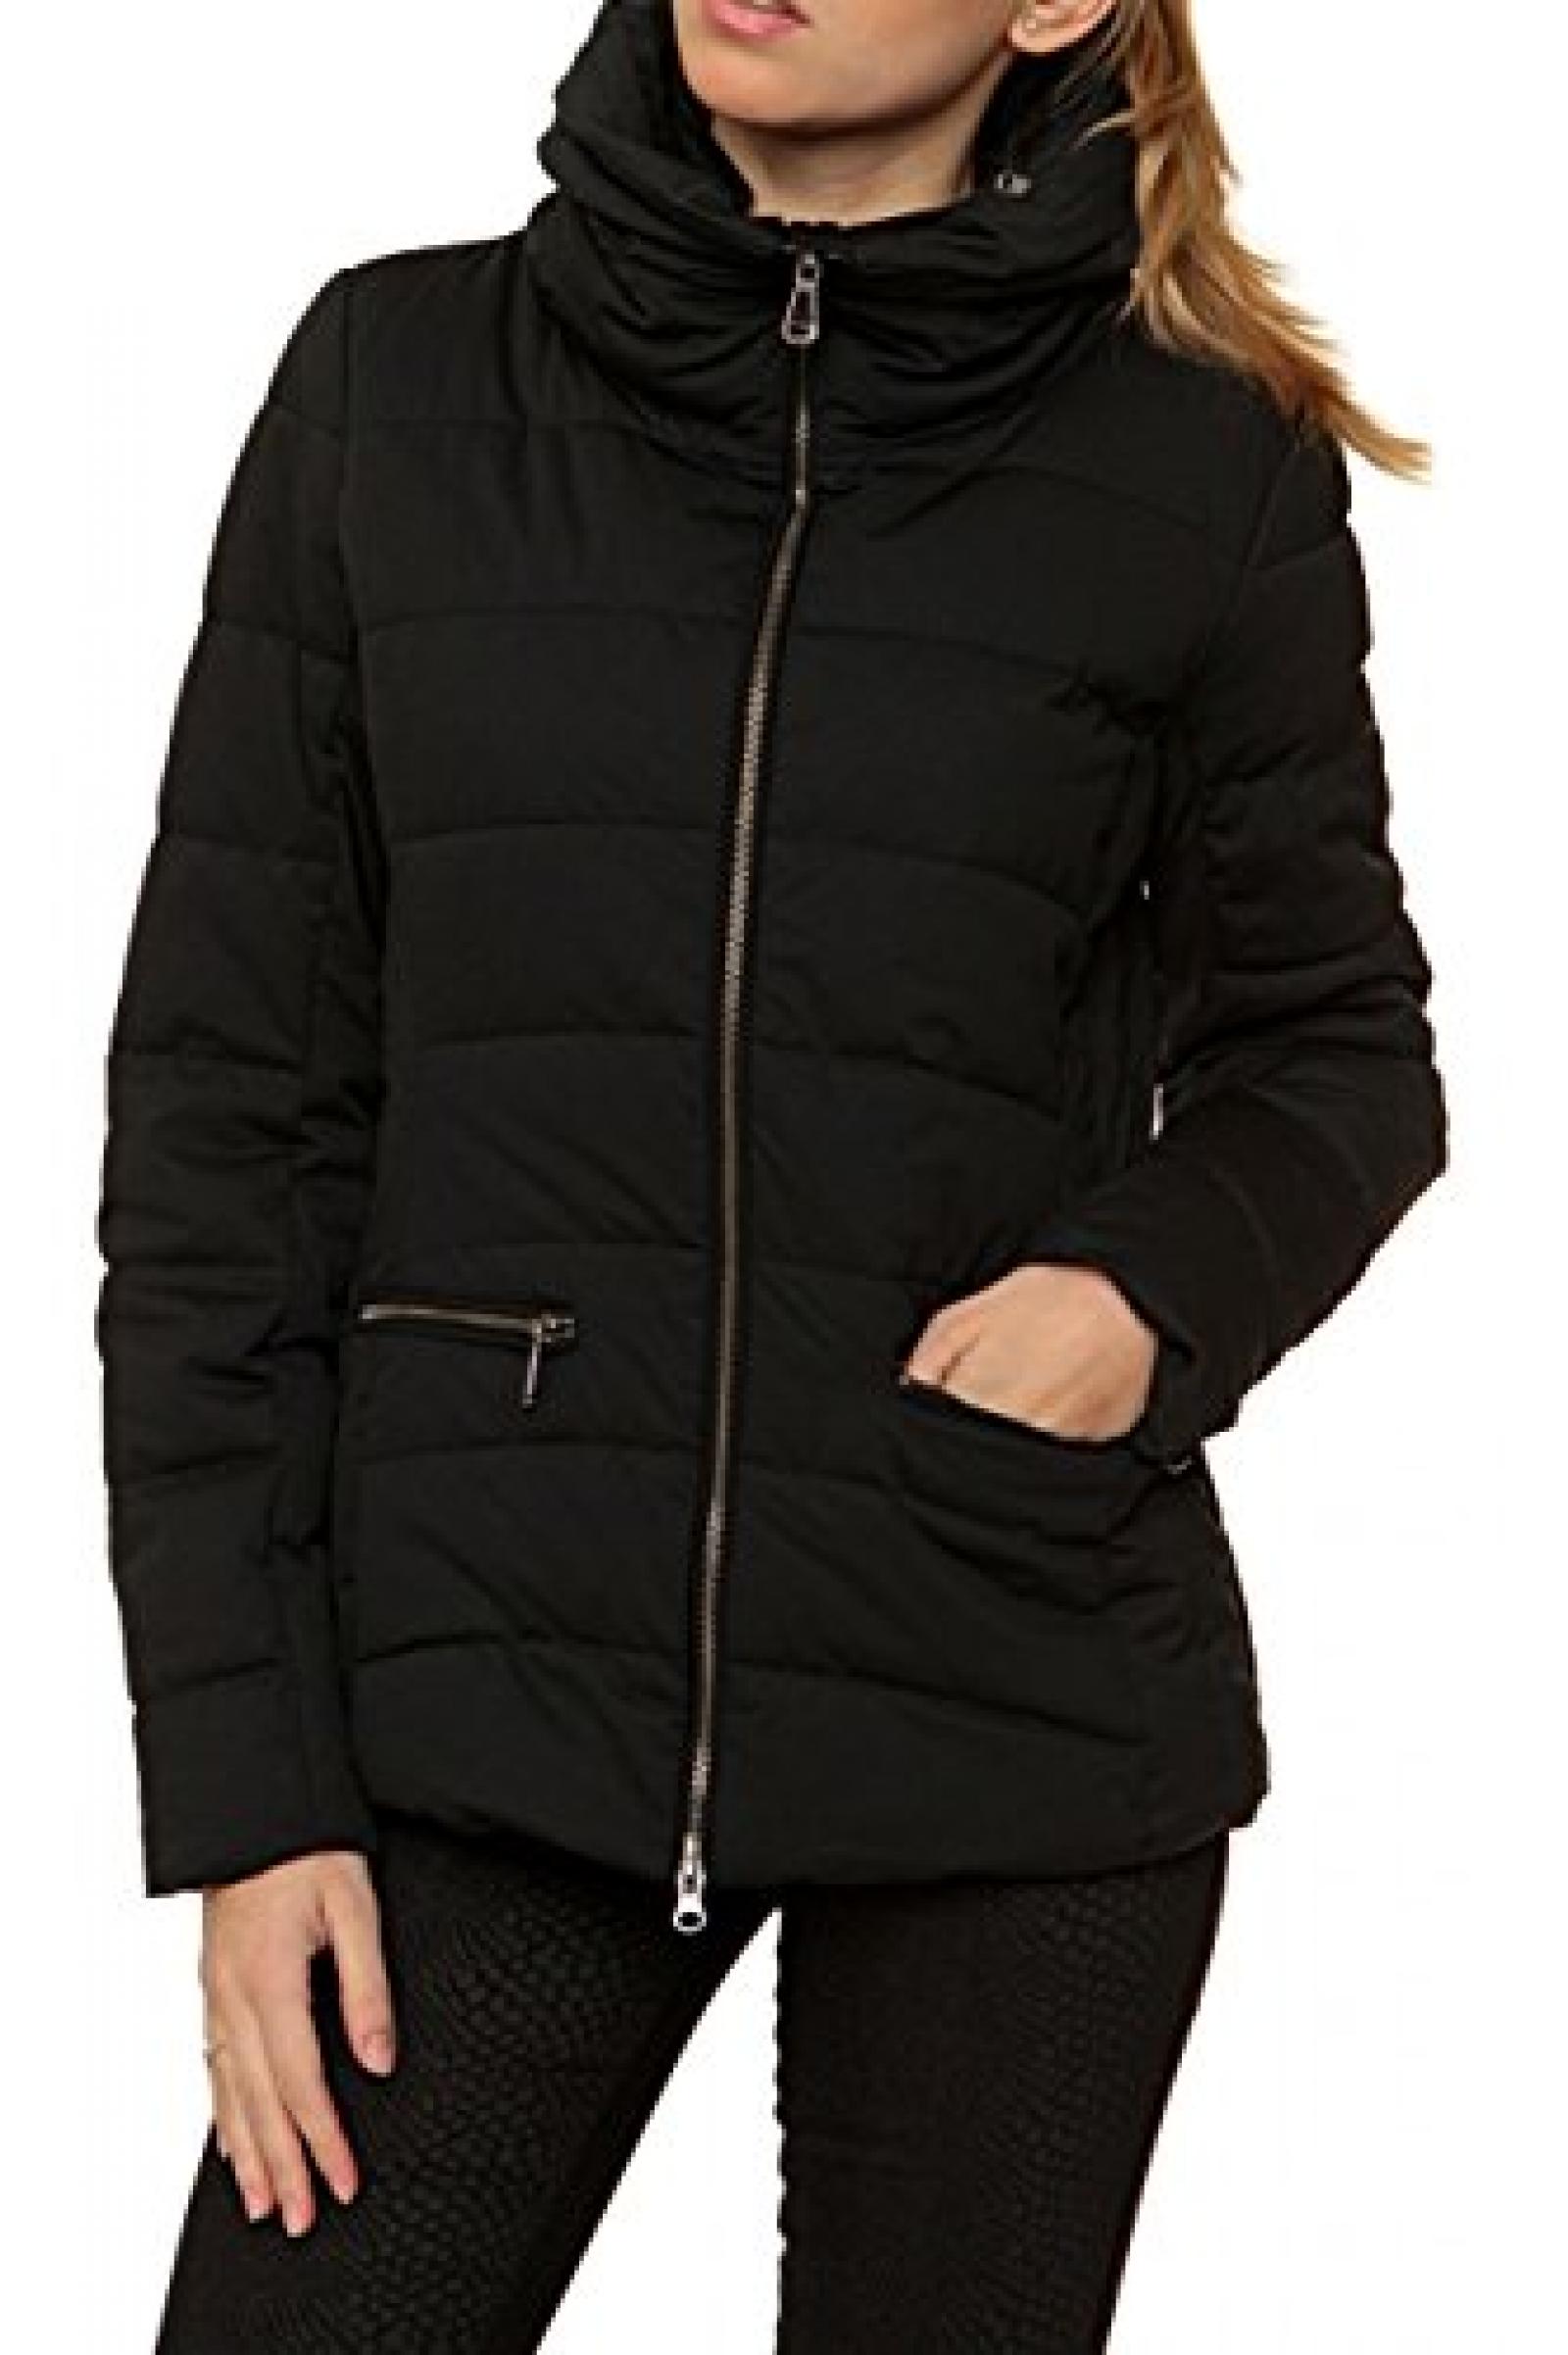 Geox Damen Jacke Winterjacke , Farbe: Schwarz 